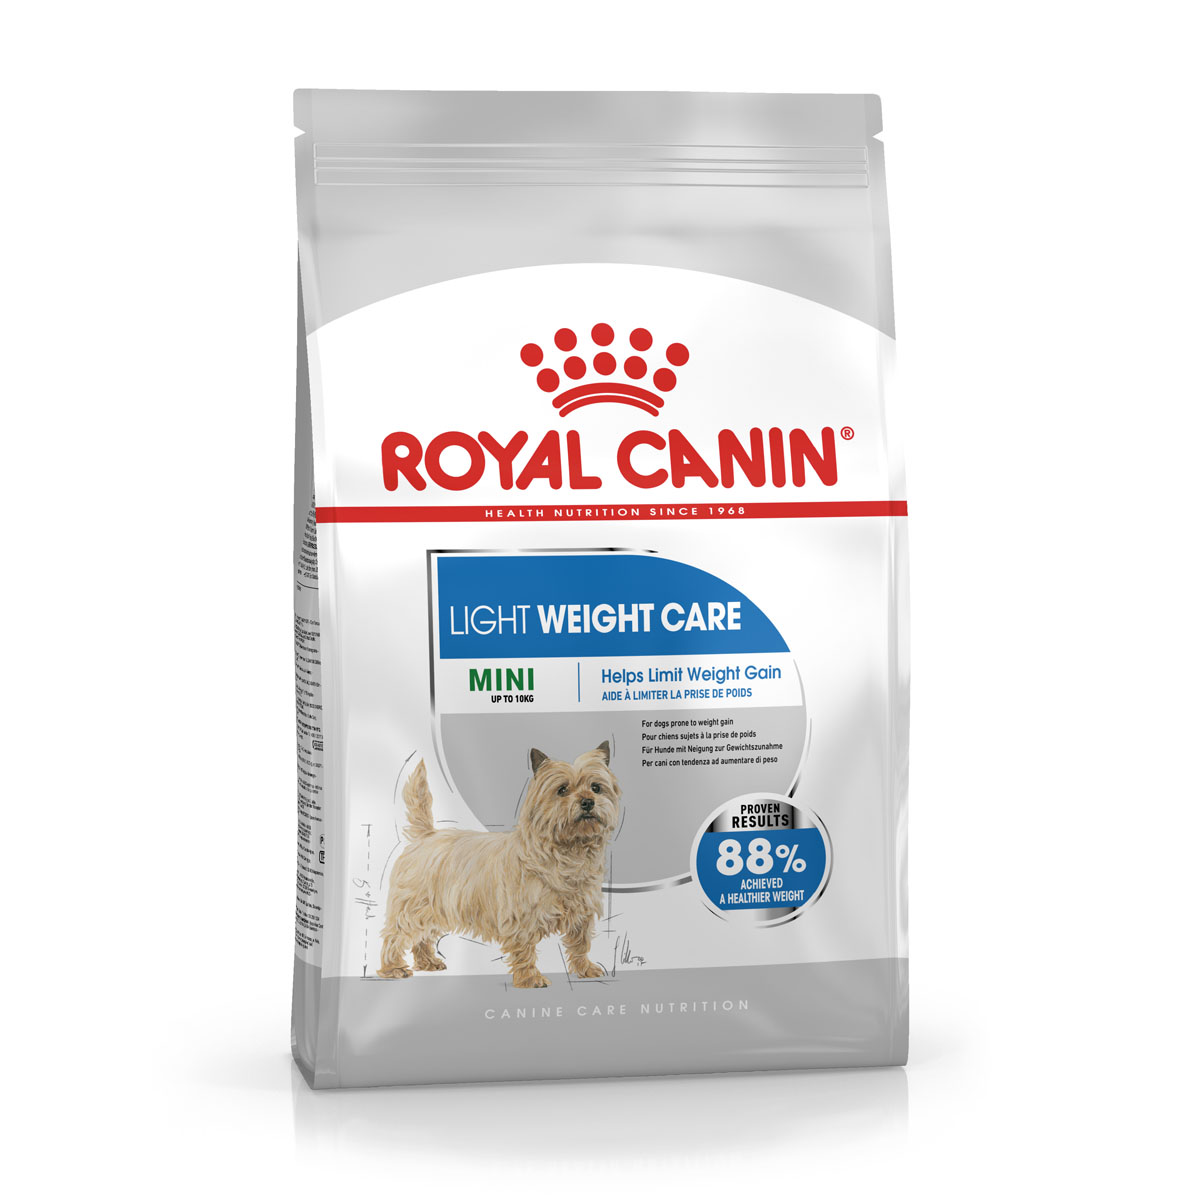 ROYAL CANIN LIGHT WEIGHT CARE MINI Trockenfutter für zu Übergewicht neigenden Hunden 8kg